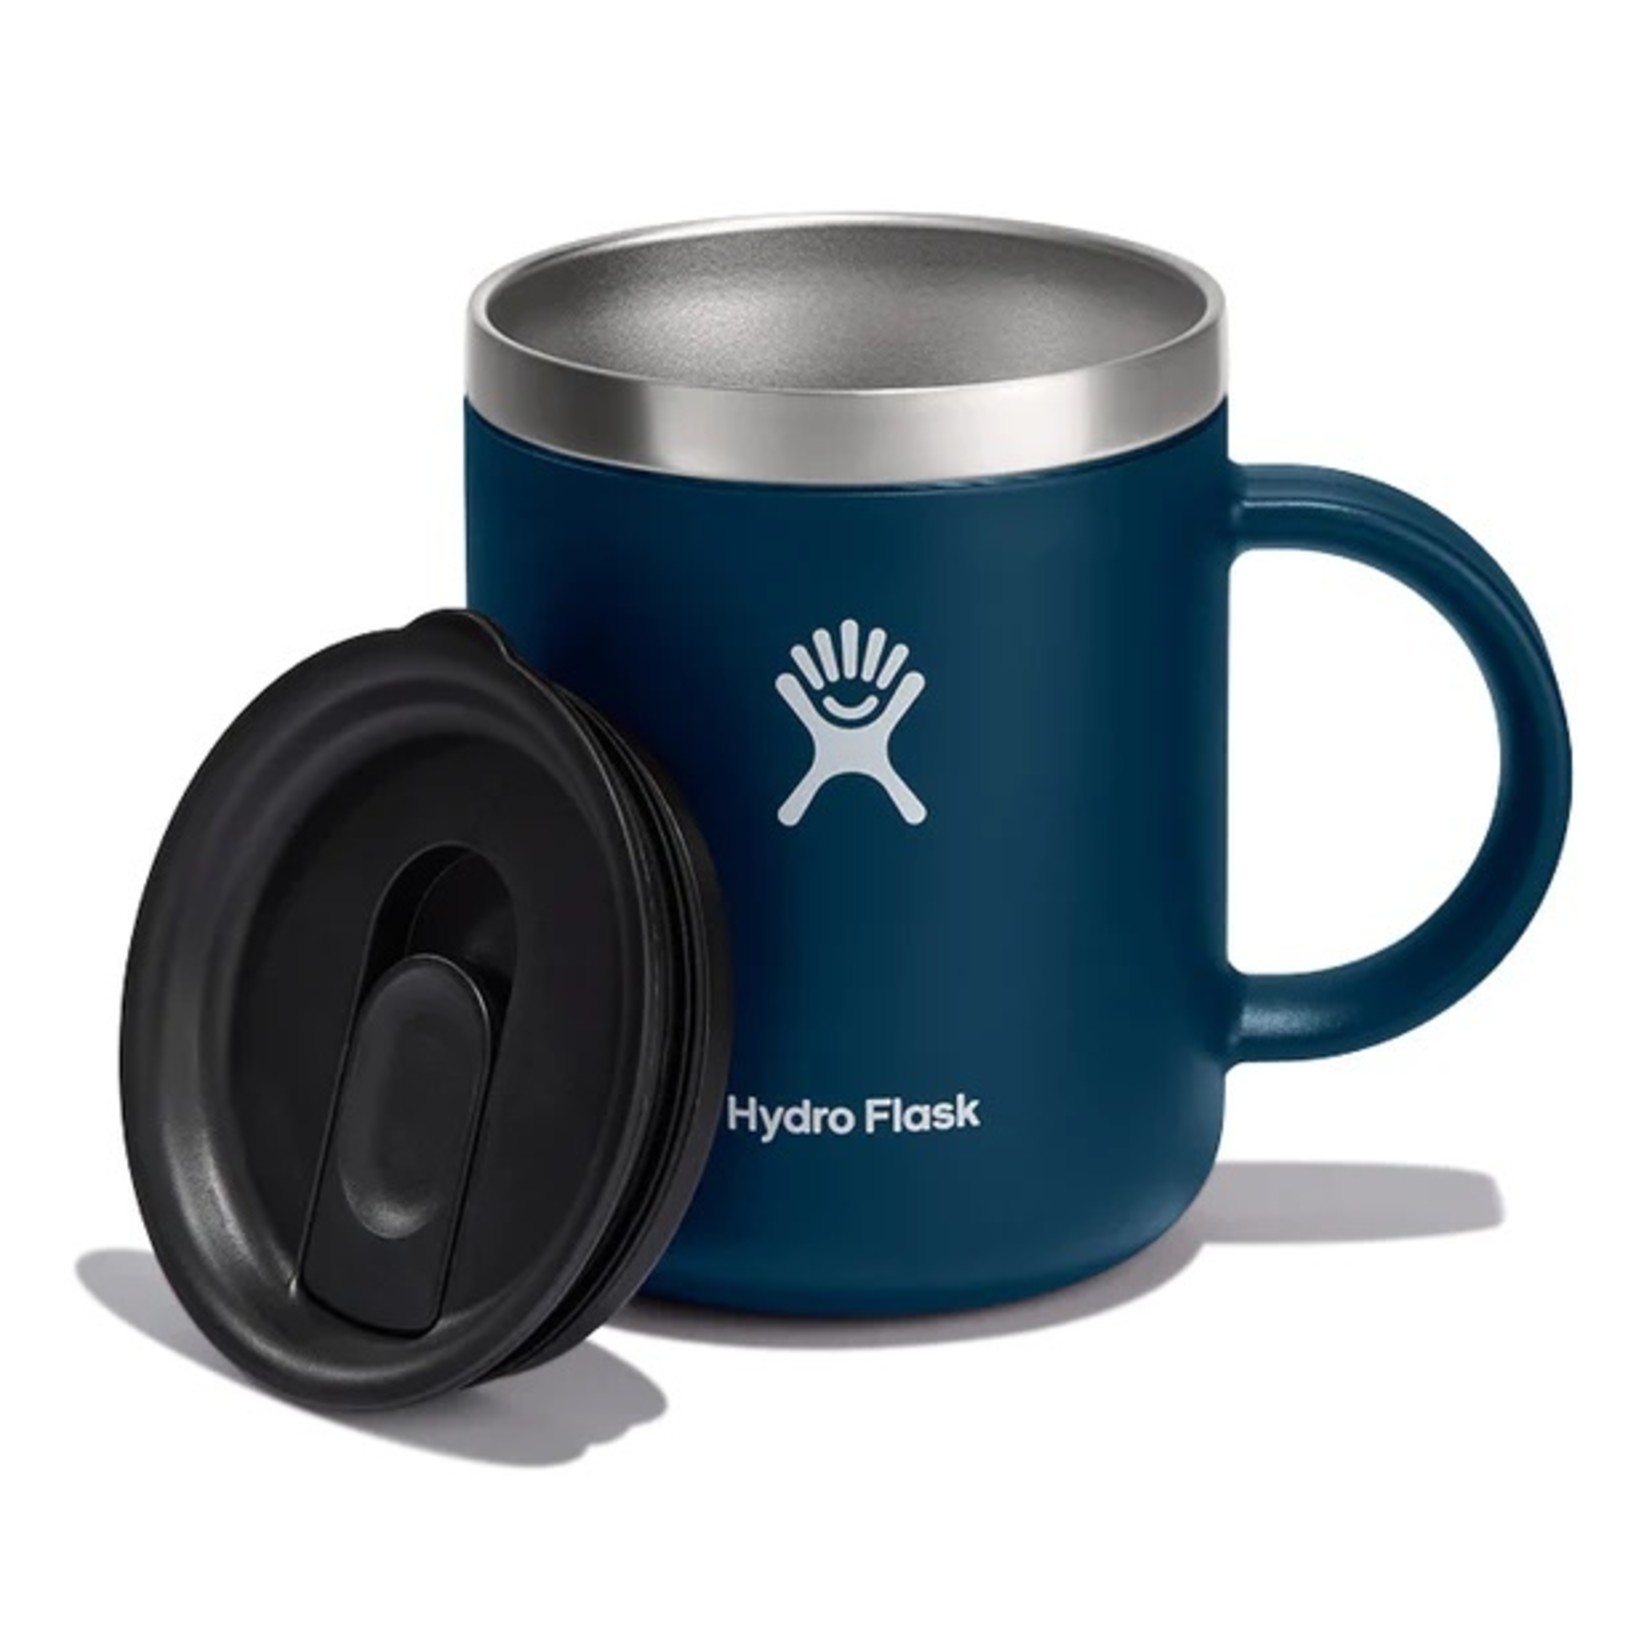 Hydro Flask Hydro Flask Cafe Mug Indigo